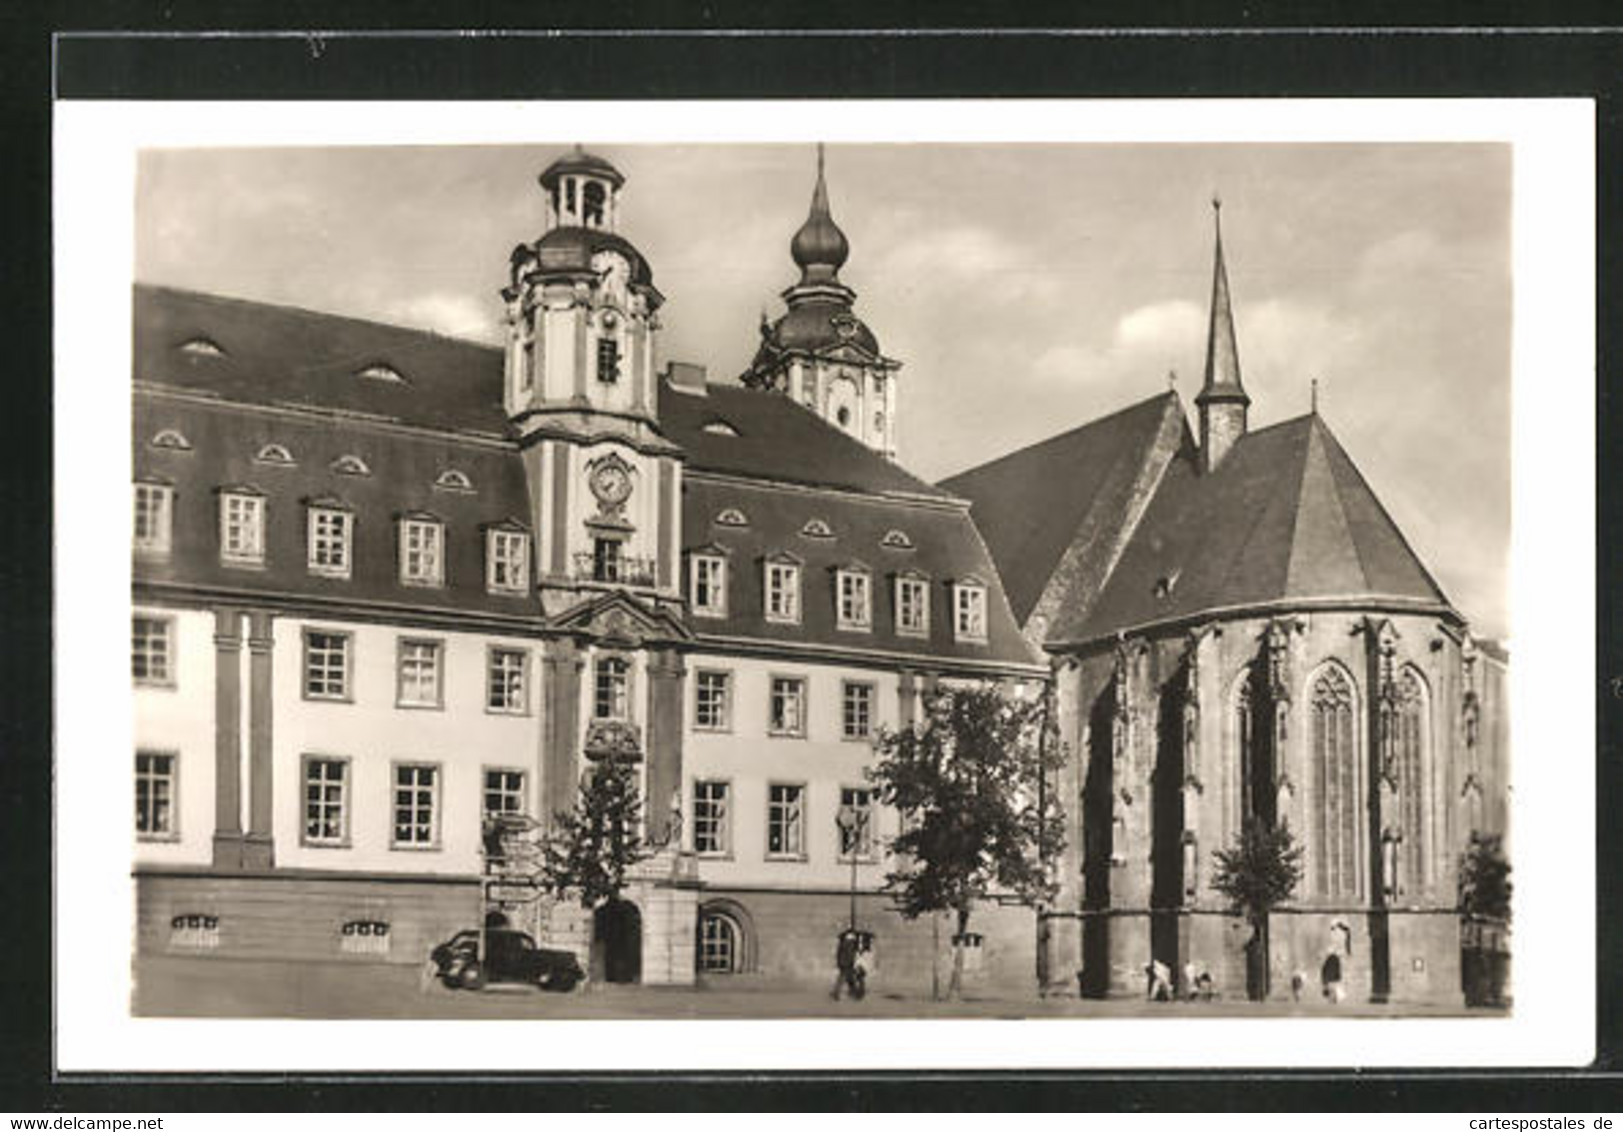 AK Weissenfels / Saale, Rathaus Mit Kirche - Weissenfels